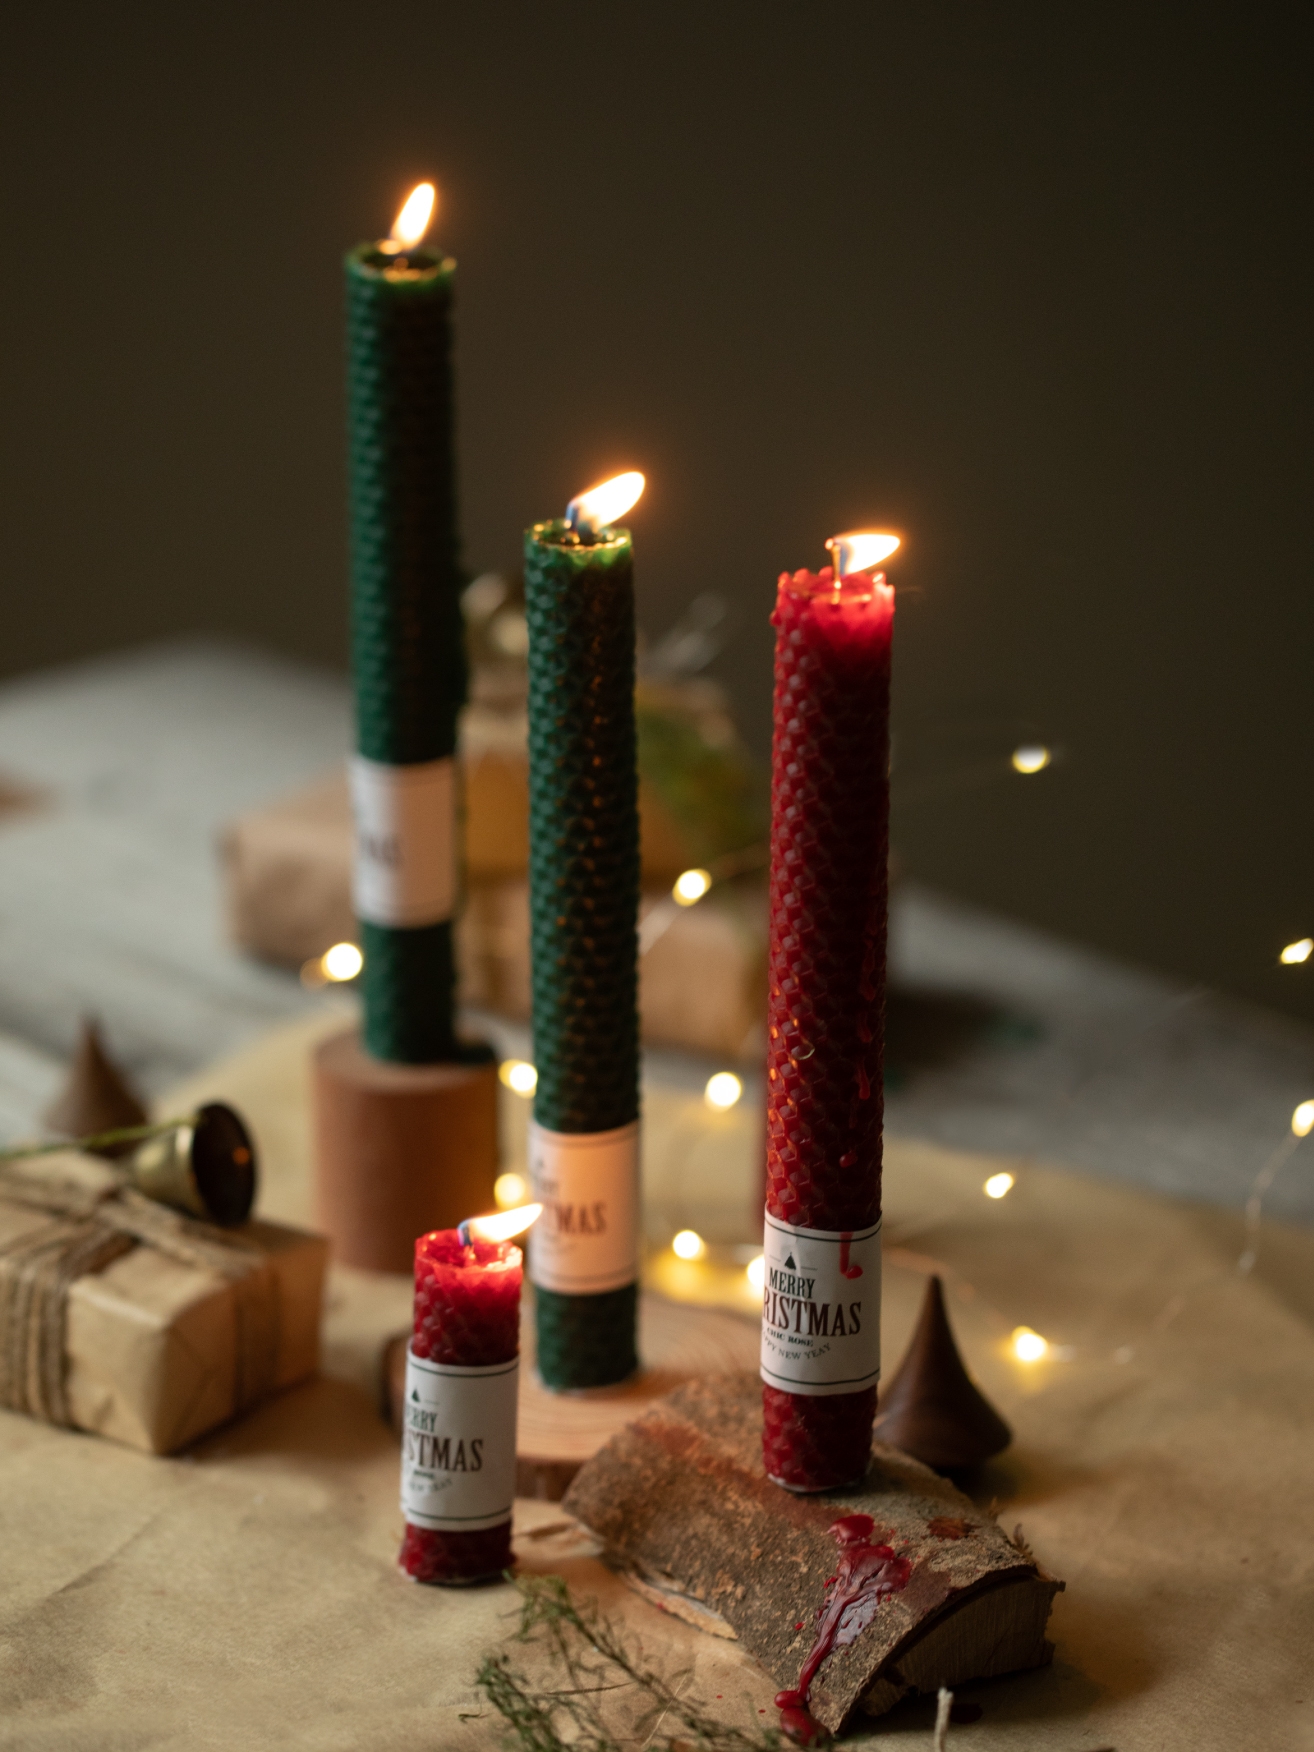 聖誕蠟燭四枝裝手工蜂蠟蠟燭營造節日餐桌氣氛紅綠色雙色可選